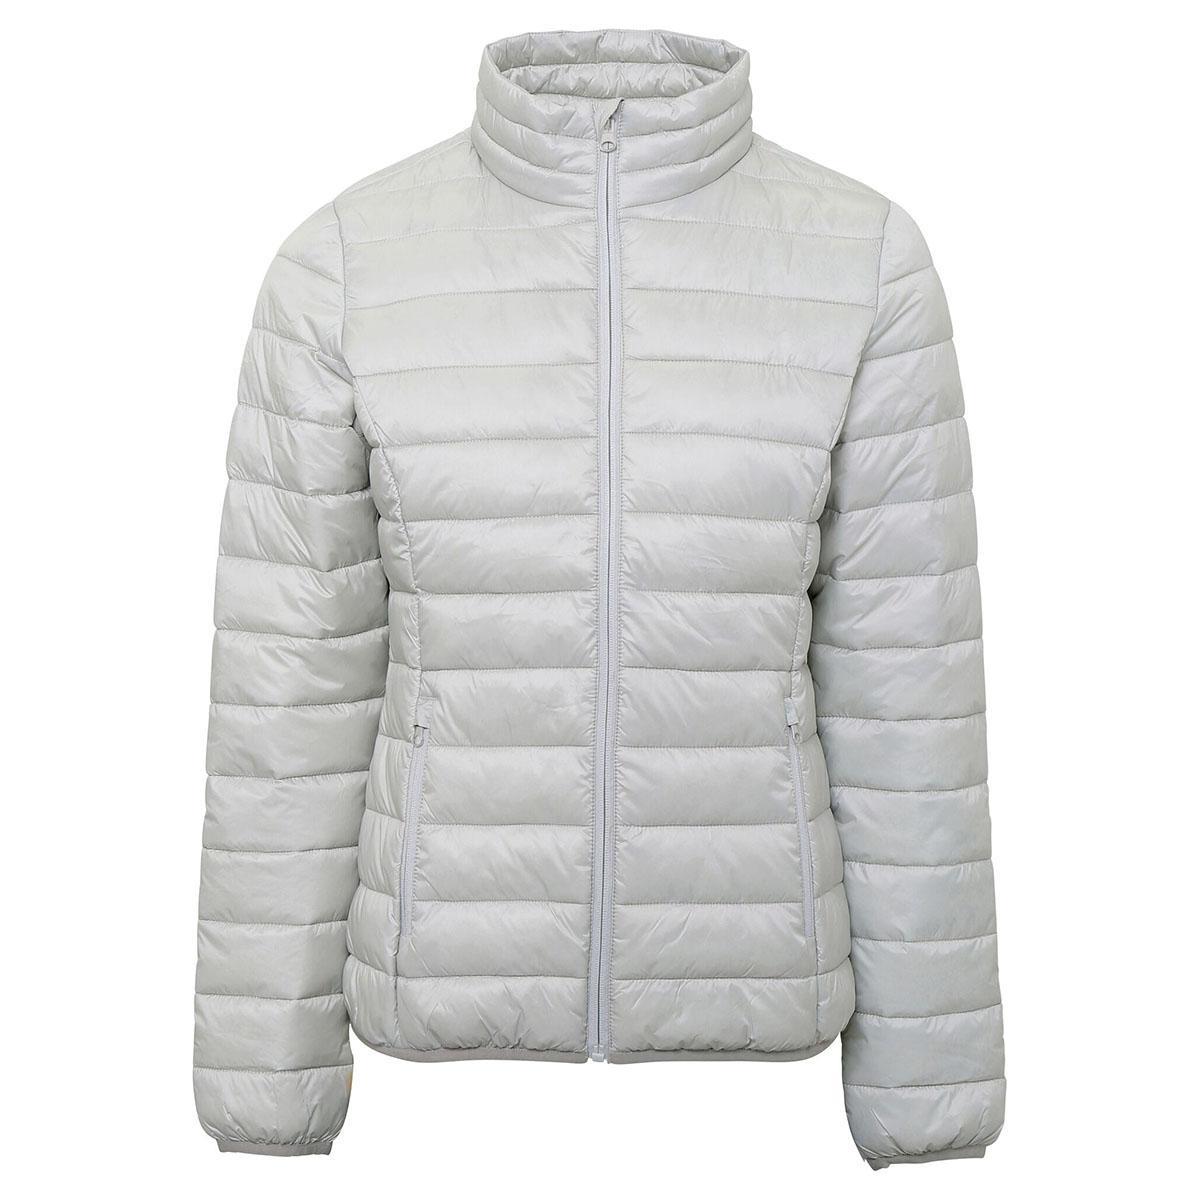 2786 Womens/Ladies Terrain Long Sleeves Padded Jacket (Silver) (S)